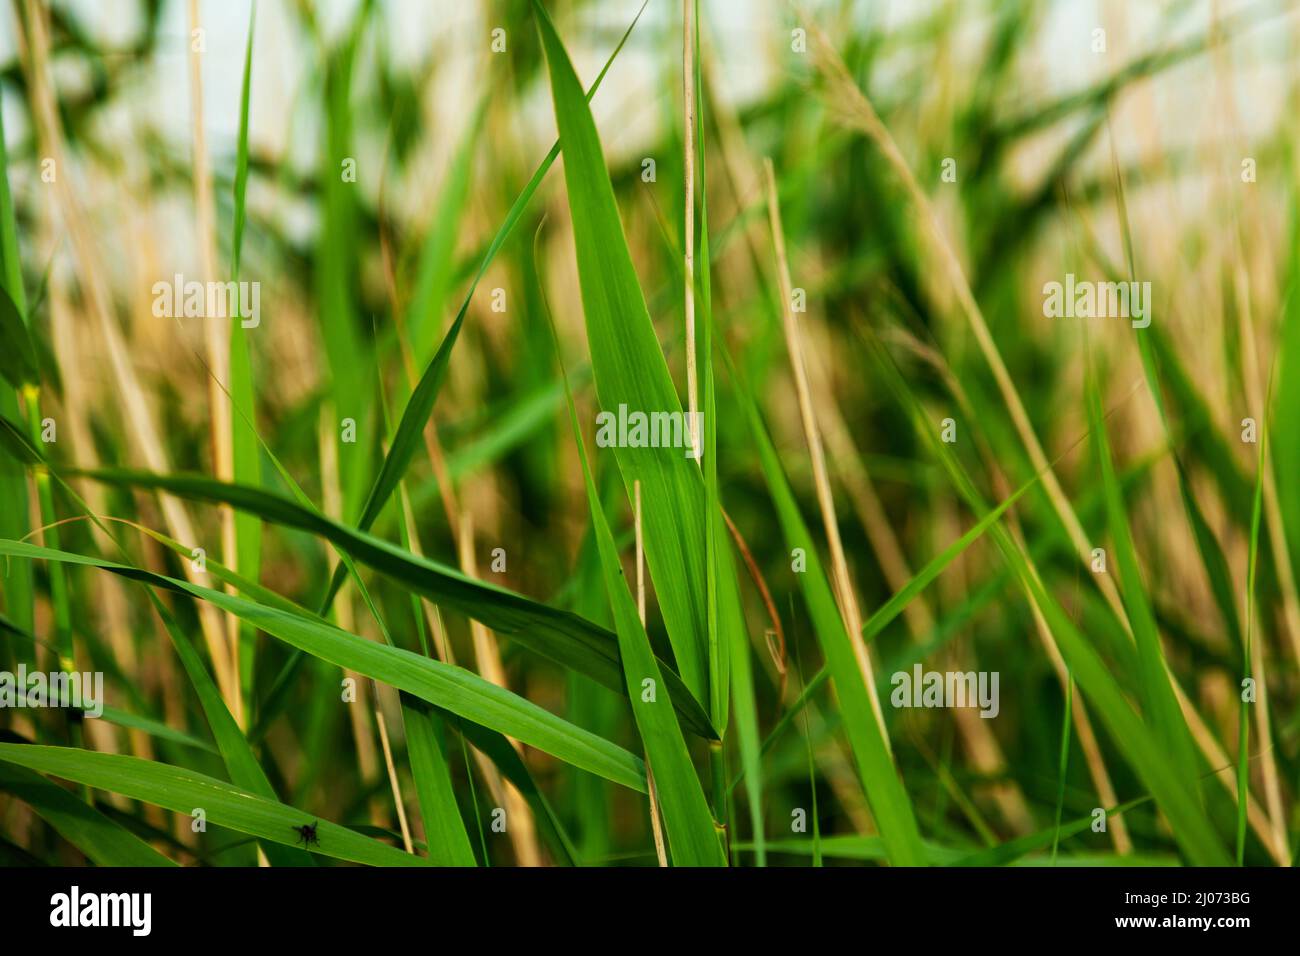 intense green grass close up Stock Photo